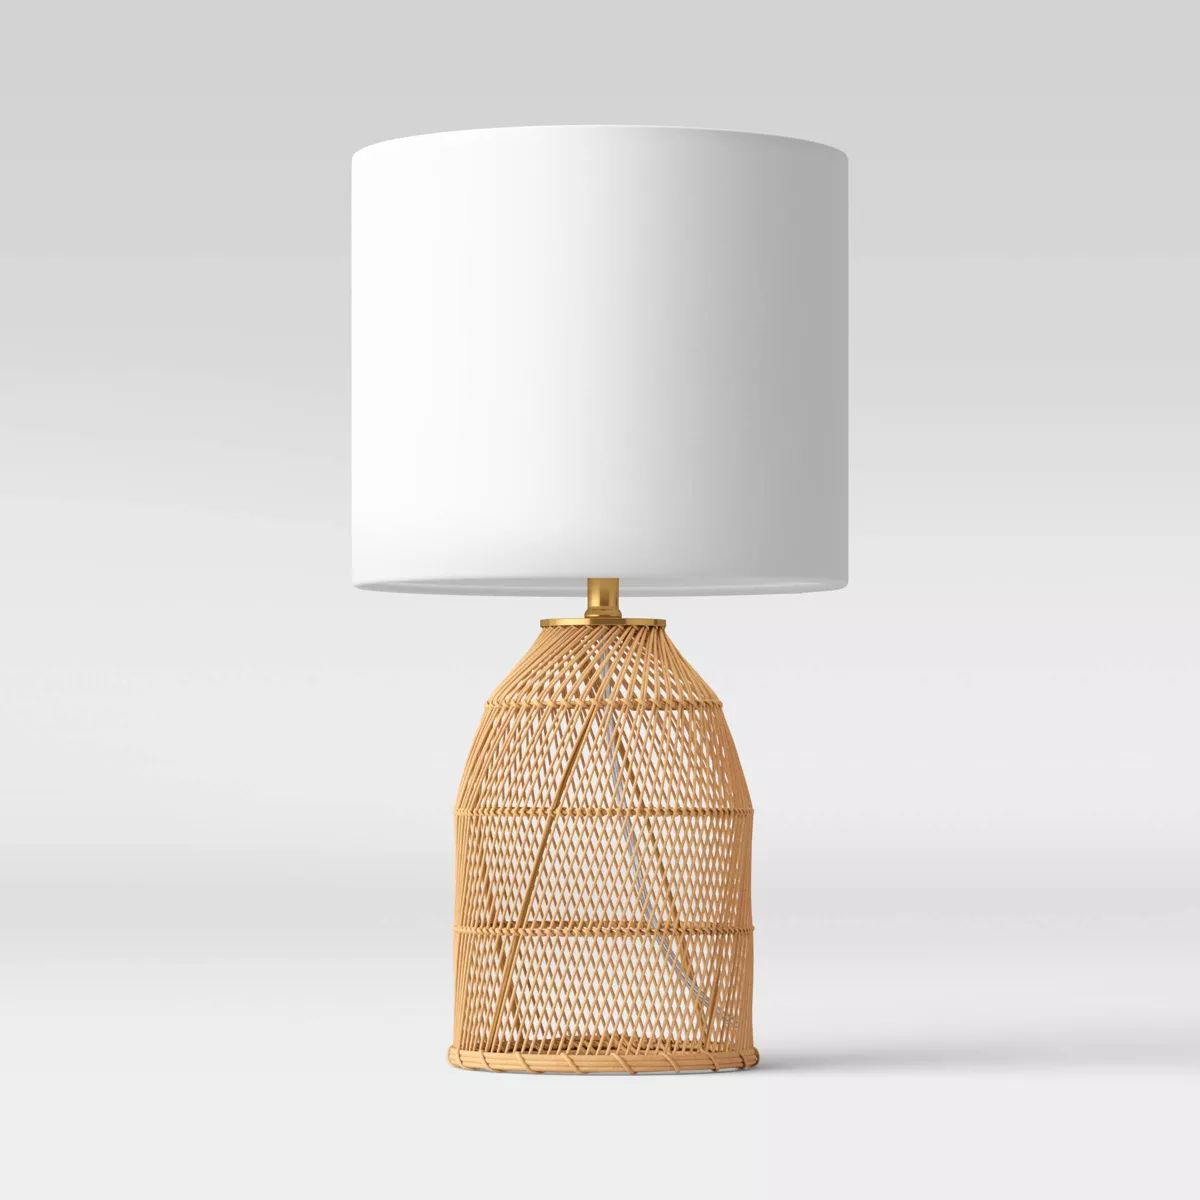 Rattan Diagonal Weave Table Lamp Tan - Threshold™ | Target